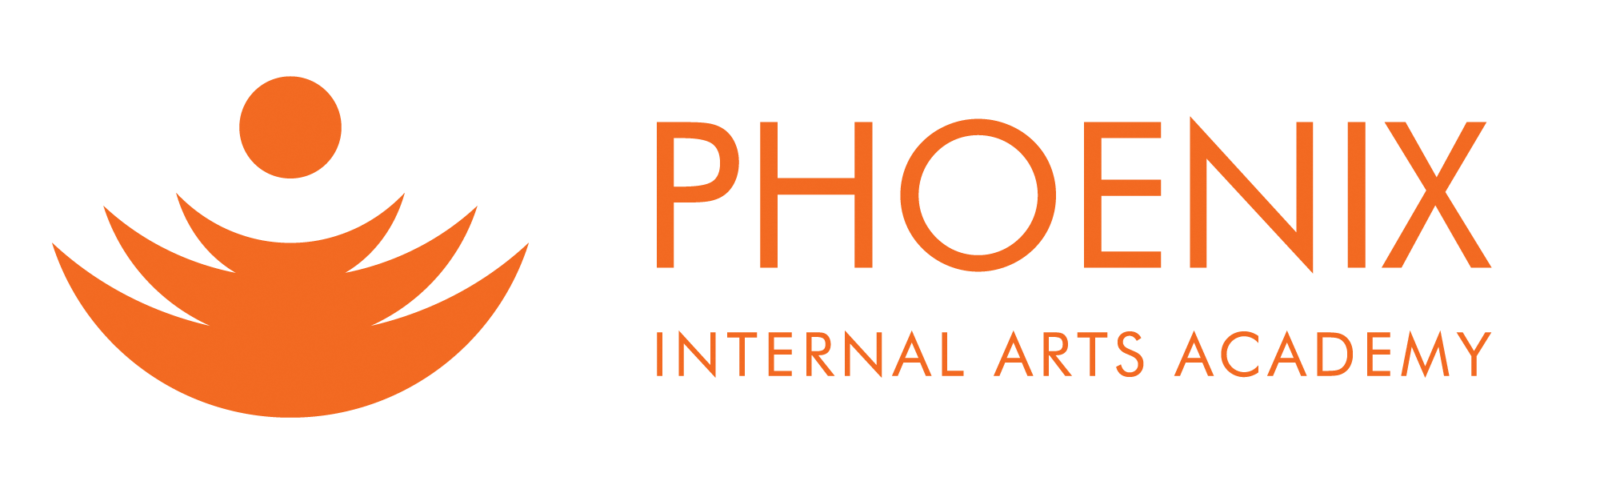 Phoenix Internal Arts Academy Inc.